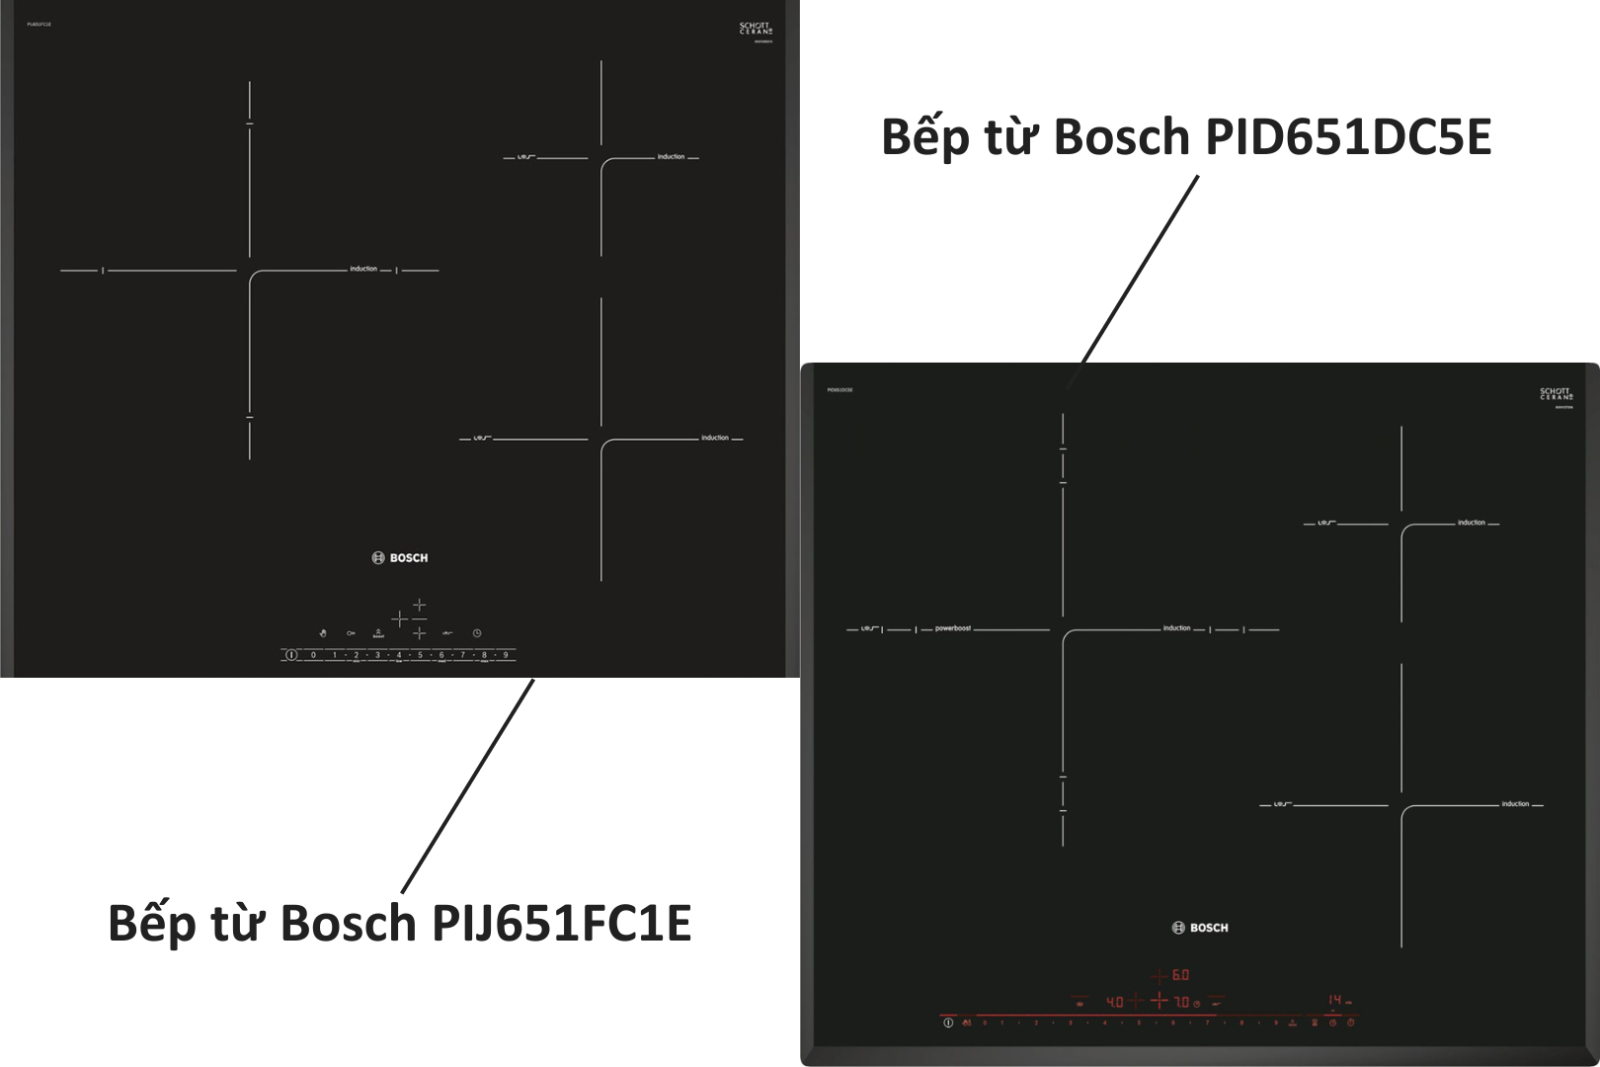 Bếp từ Bosch PIJ651FC1E (trái) và Bosch PID651DC5E (phải)